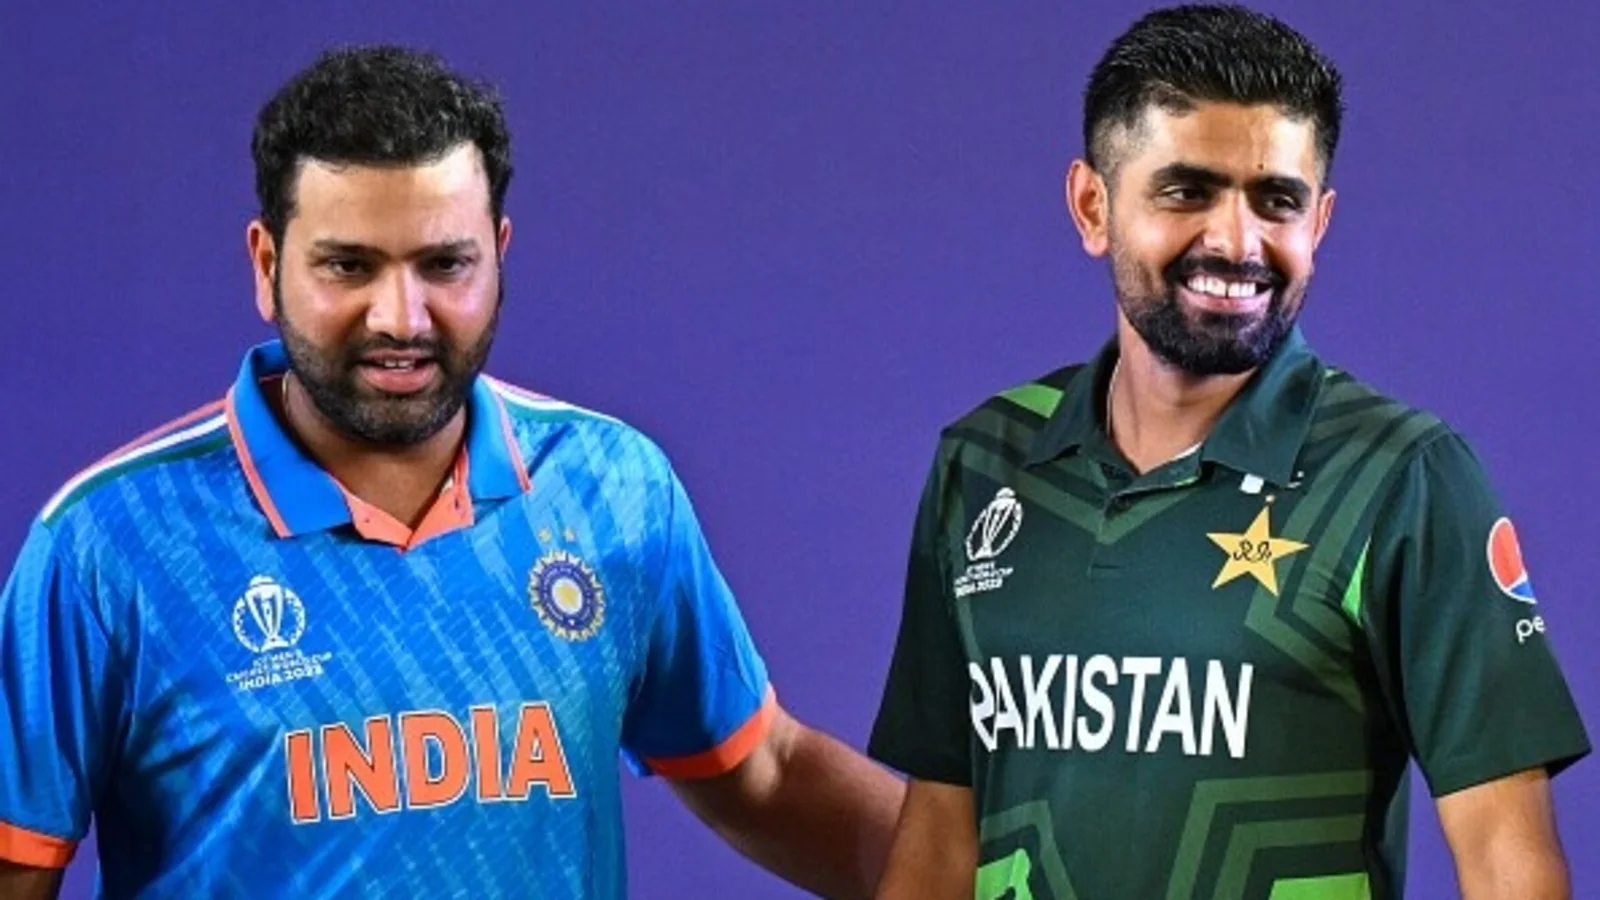 IND vs PAK World Cup 2023: भारतीय क्रिकेट टीम की जीत की आशा में अपने प्रियजनों को ये बधाई संदेश भेजें